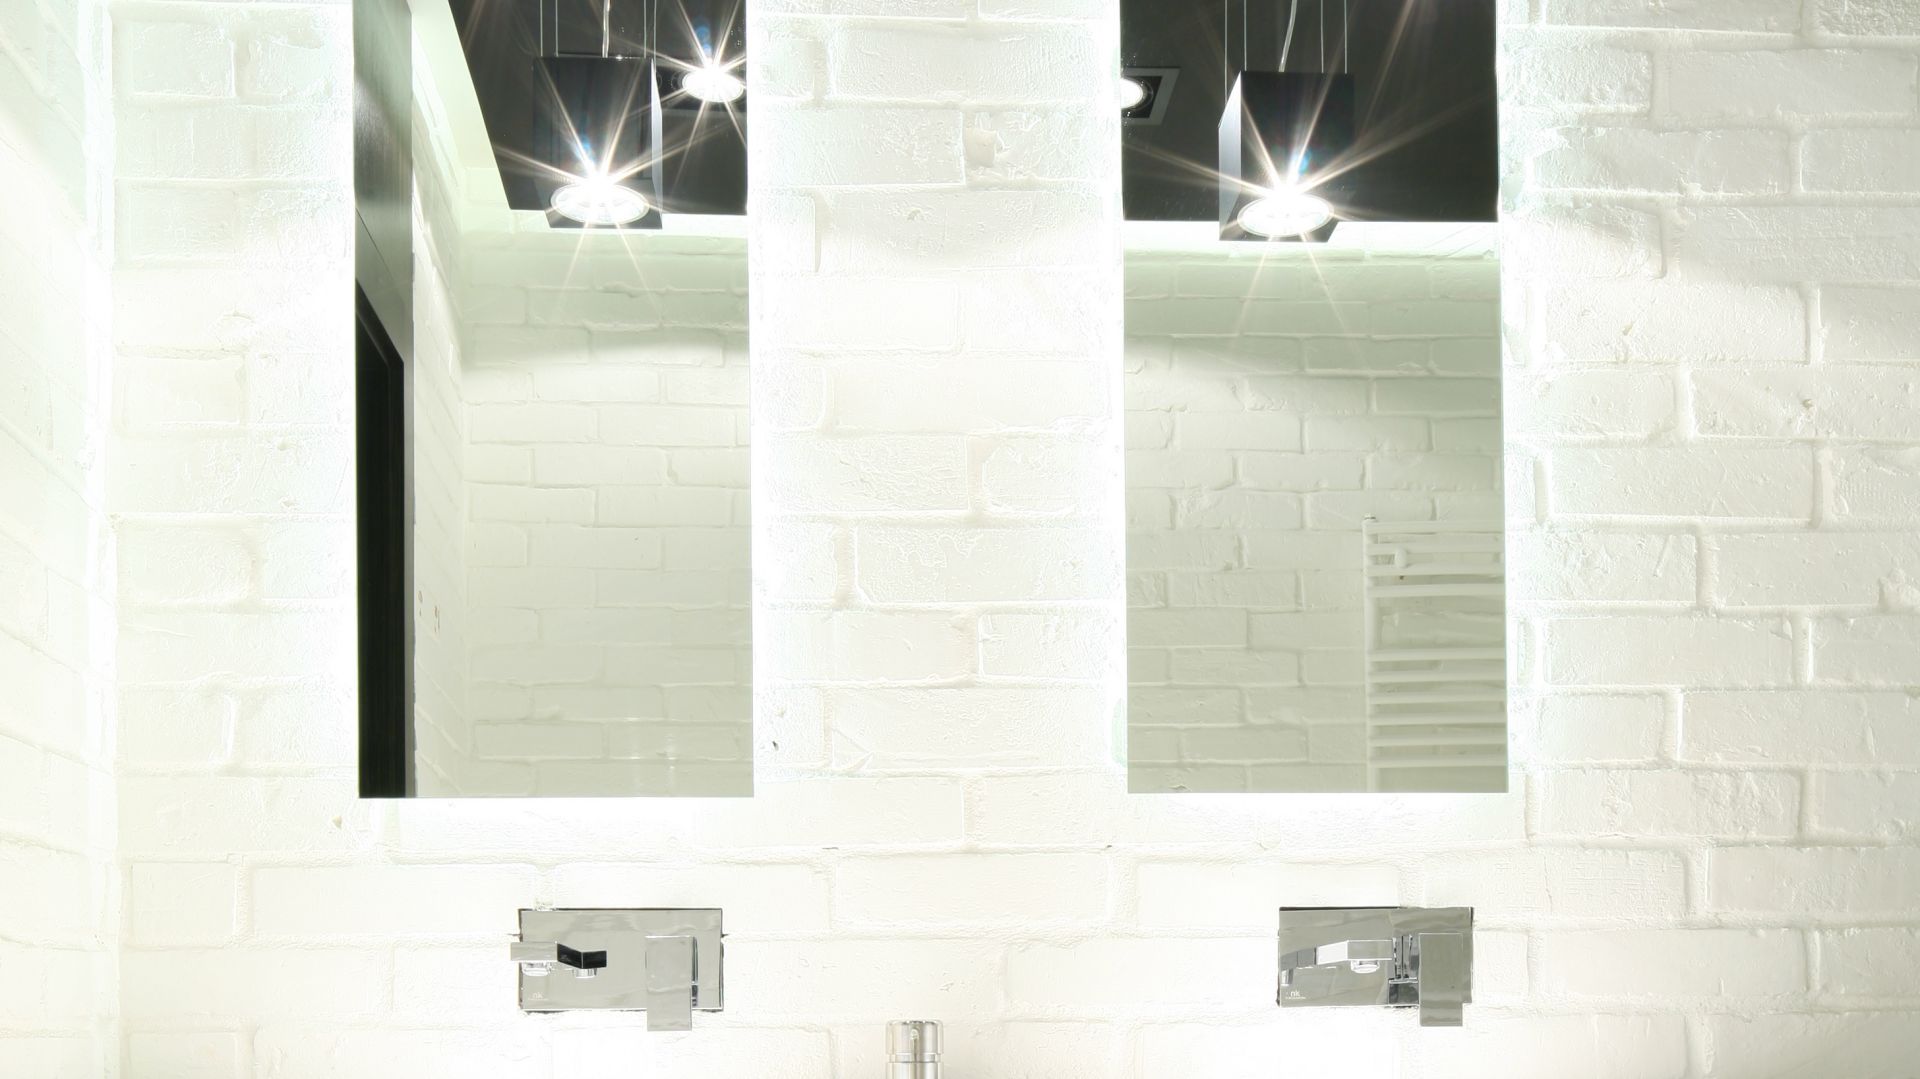 Łazienka w stylu industrialnym – tak można wykorzystać białą cegłę